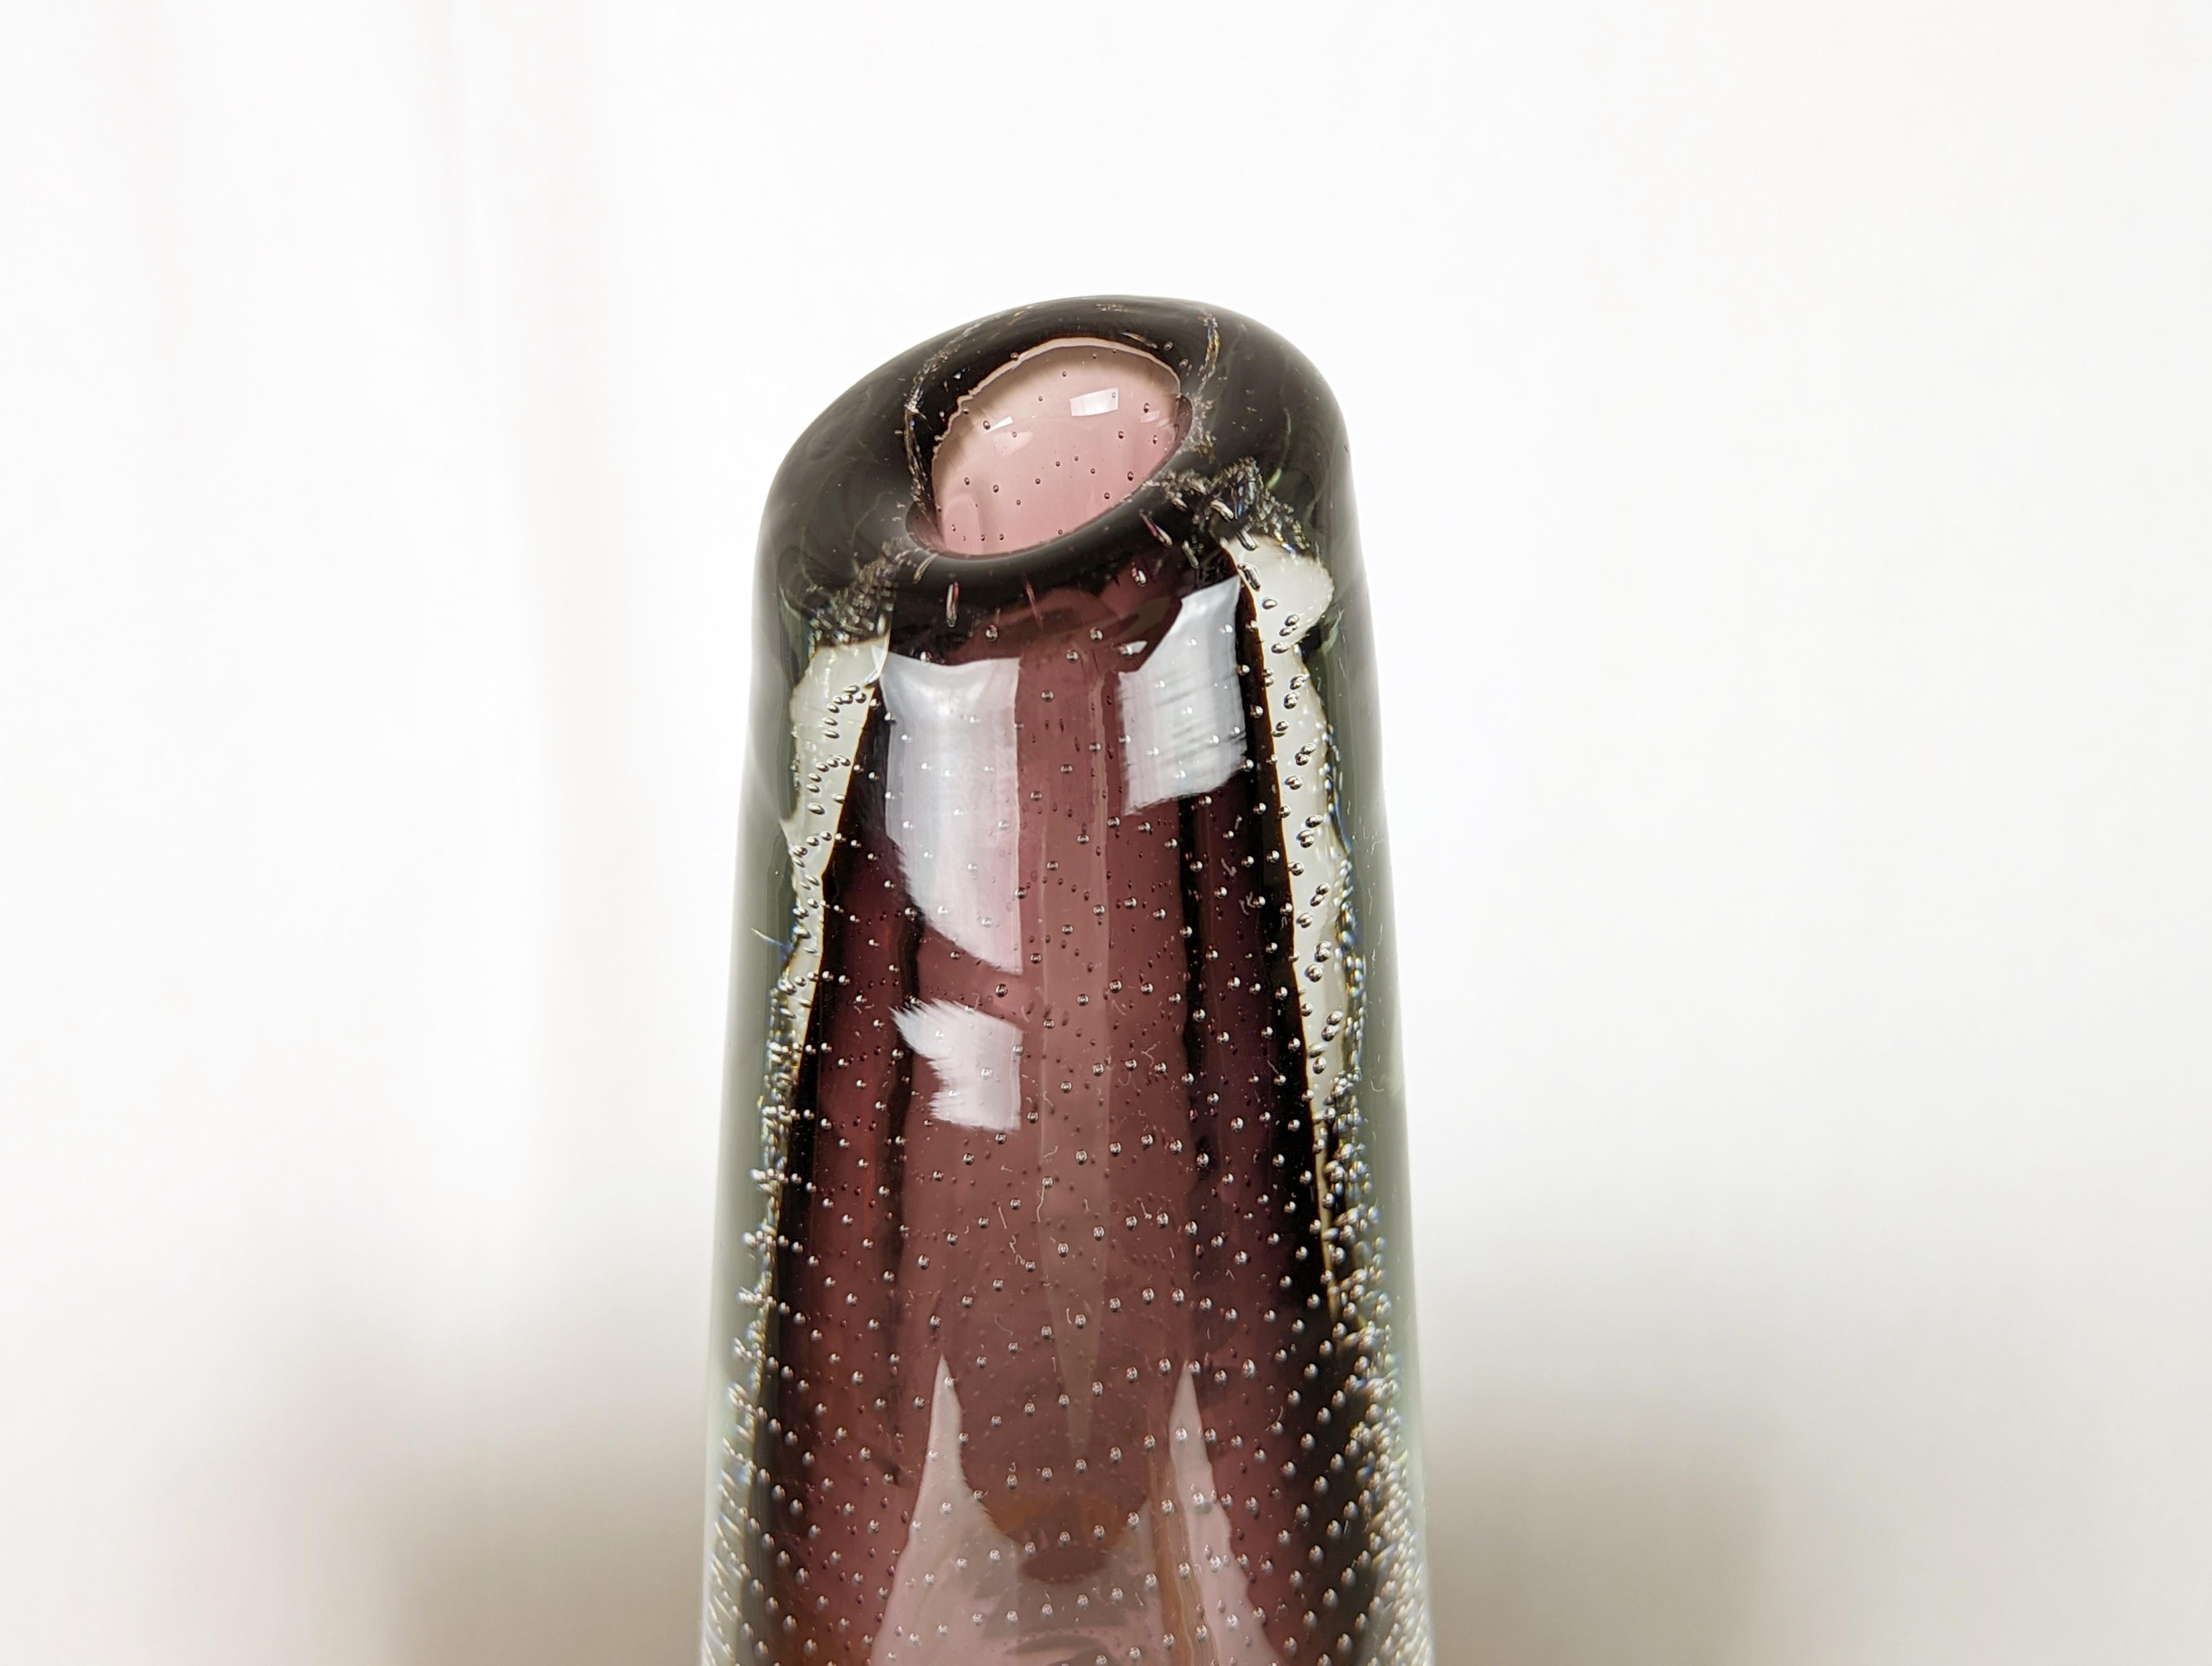 Seltene Vase aus klarem und violettem Glas aus der Mitte des Jahrhunderts von Gunnel Nyman für die finnische Nuutajarvi Glasswork. Handgeblasenes kontrolliertes Blasenmodell GN 17. Ein sichtbarer Chip wie auf den Bildern zu sehen.
Signiert und